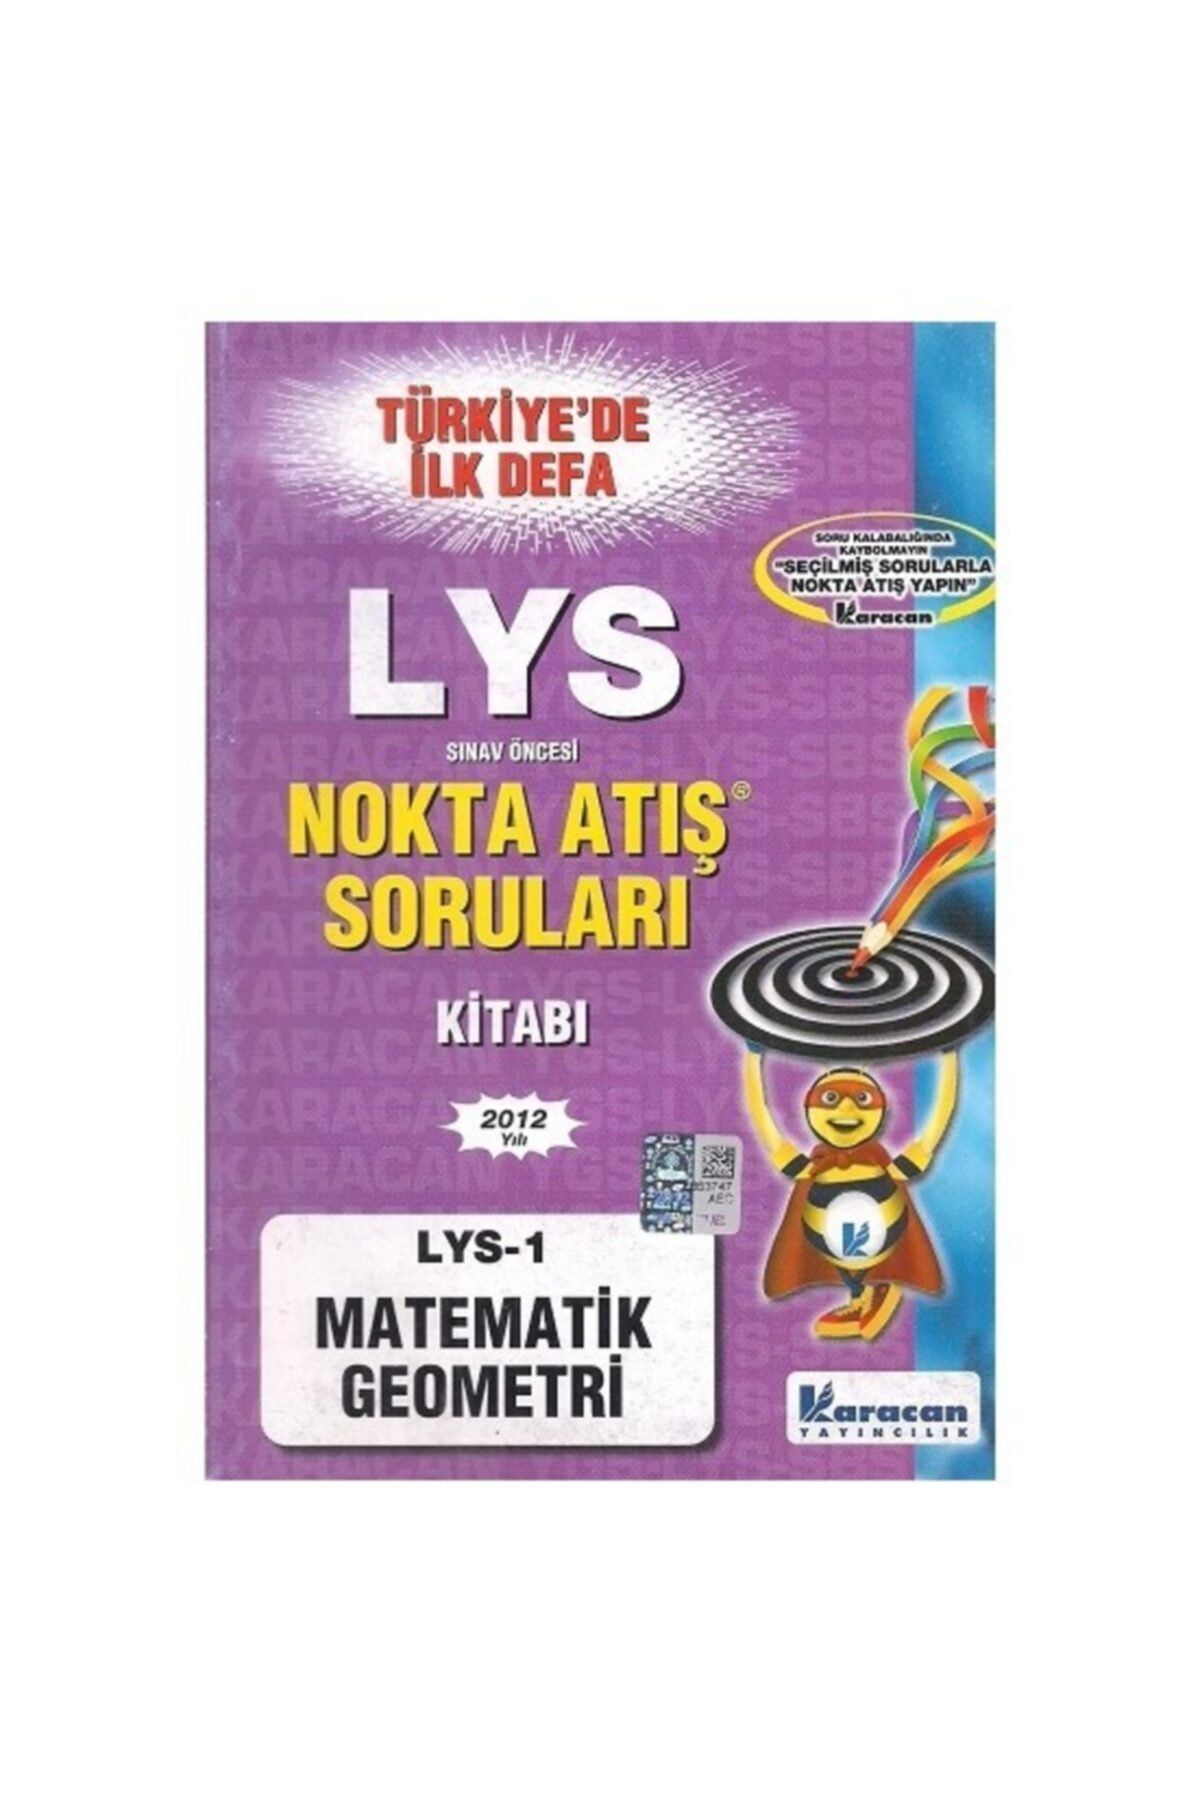 karacan akademi Lys 1 Matematik - Geometri Nokta Atış Karacan Yayınları Karacan